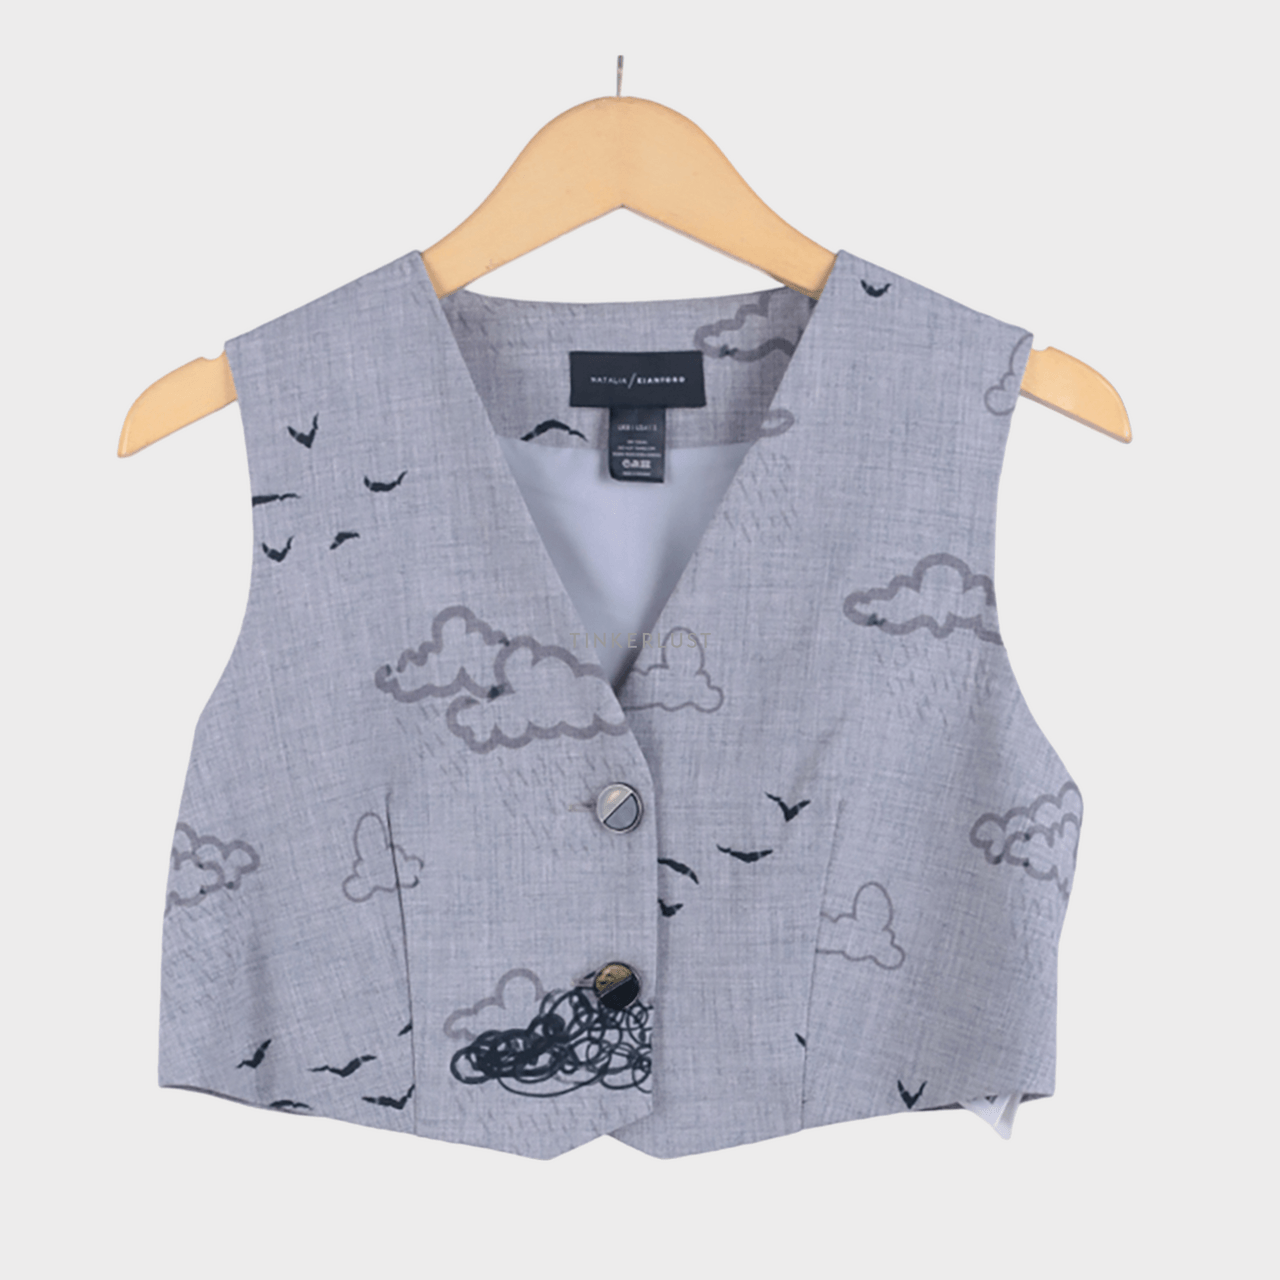 Natalia/Kiantoro Grey Pattern Vest